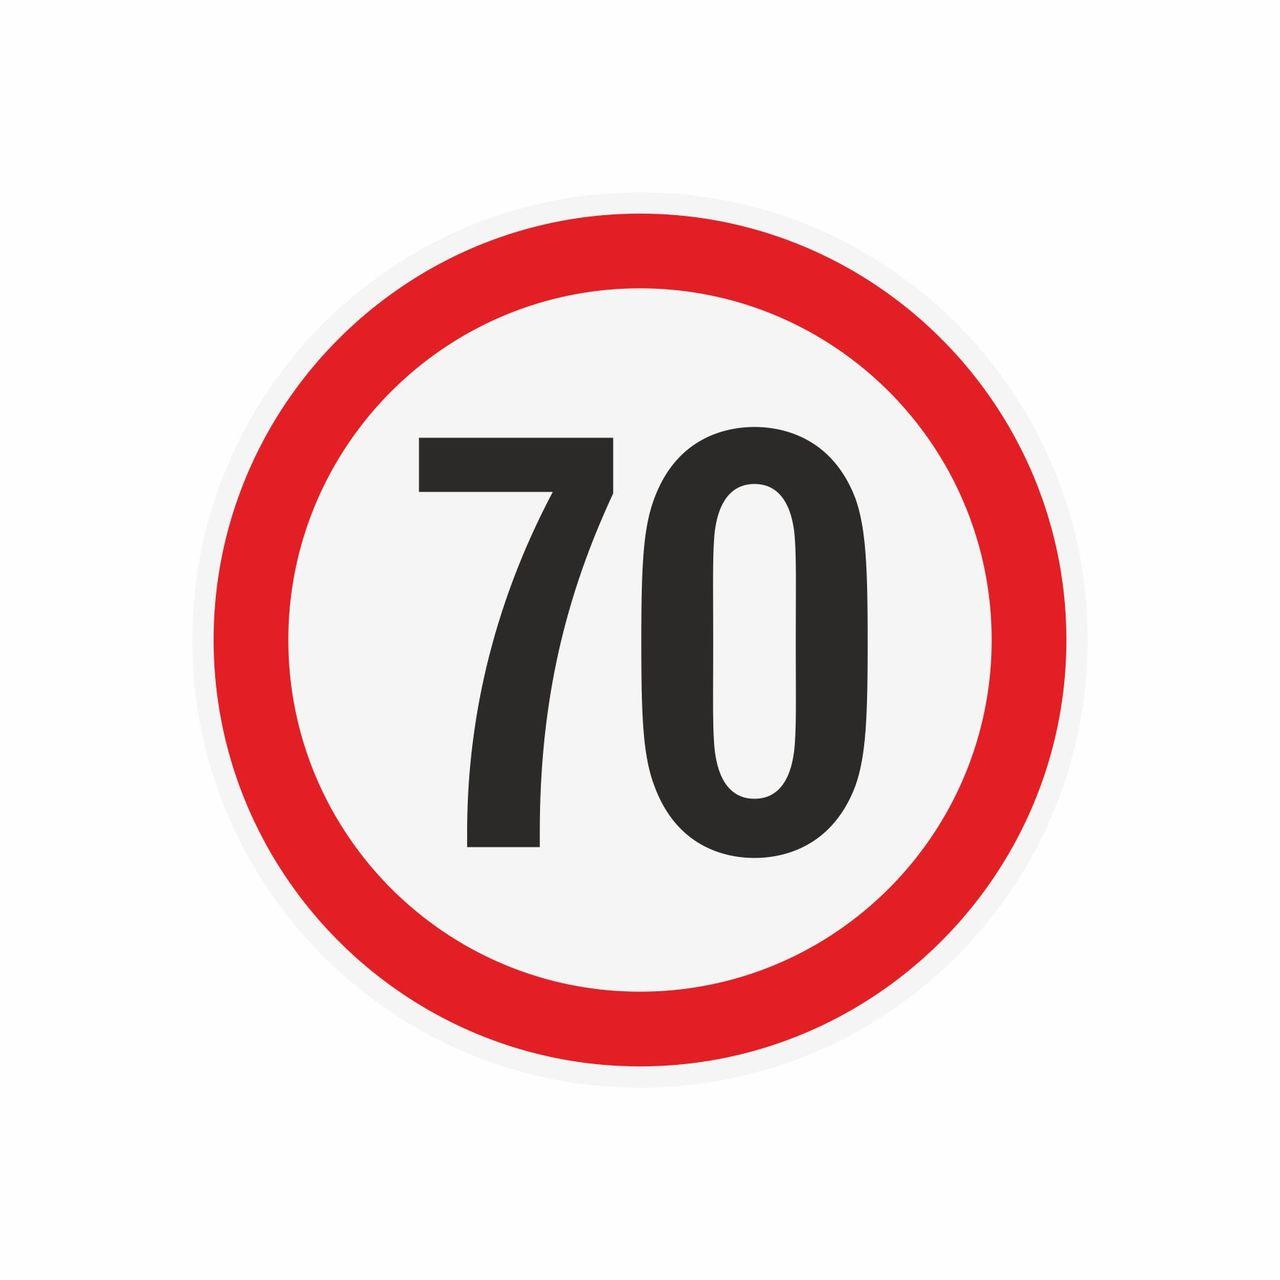 Наклейка ограничения скорости "70" для автотранспорта, 210х210 мм